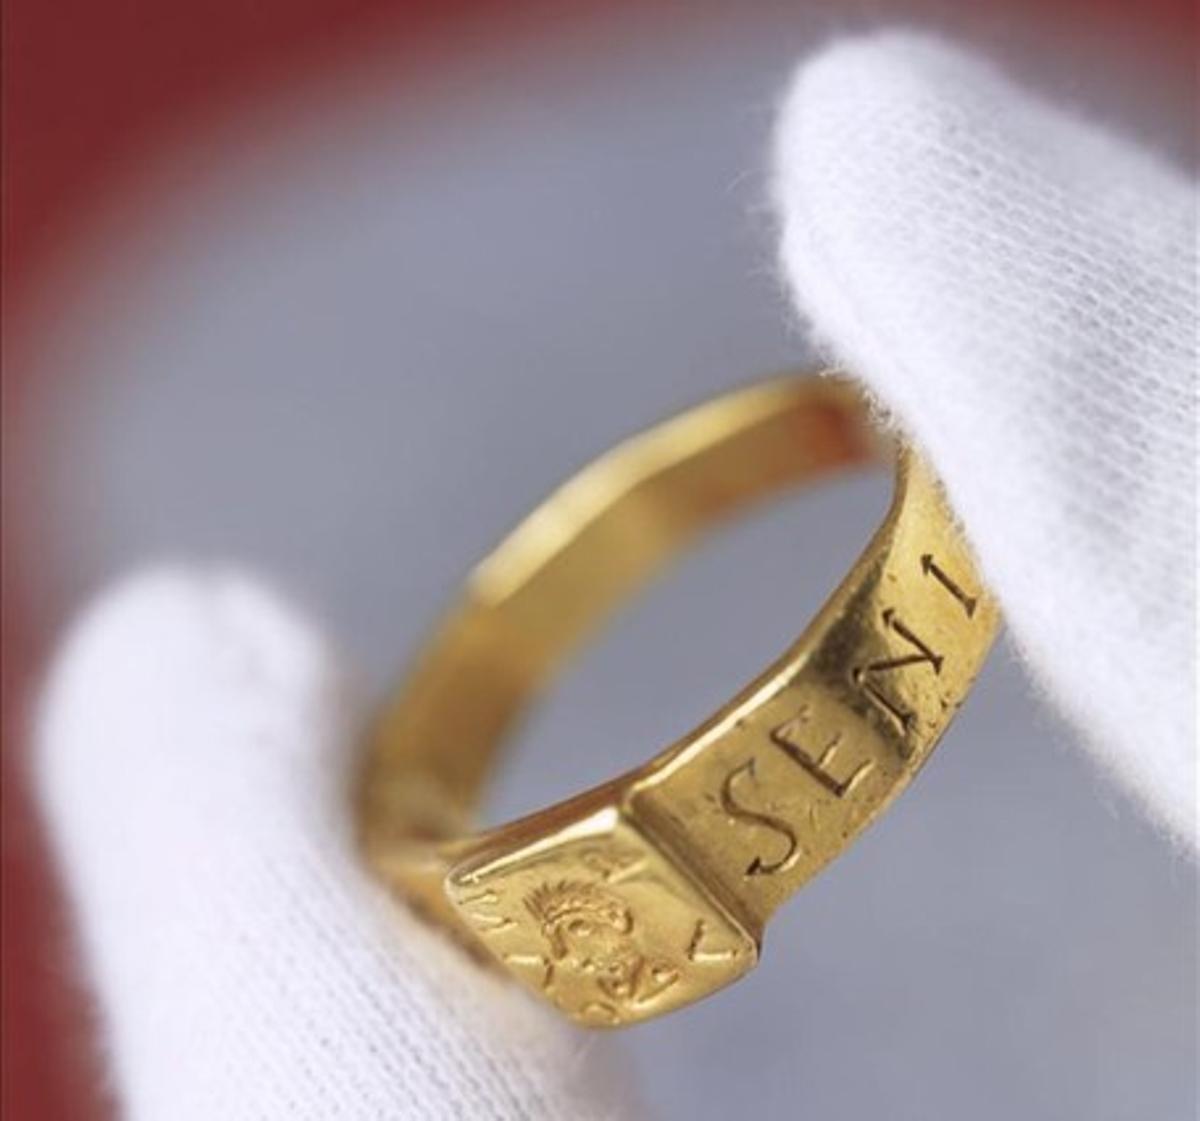 Maravilloso Potencial Touhou El anillo que inspiró a Tolkien, expuesto en Inglaterra